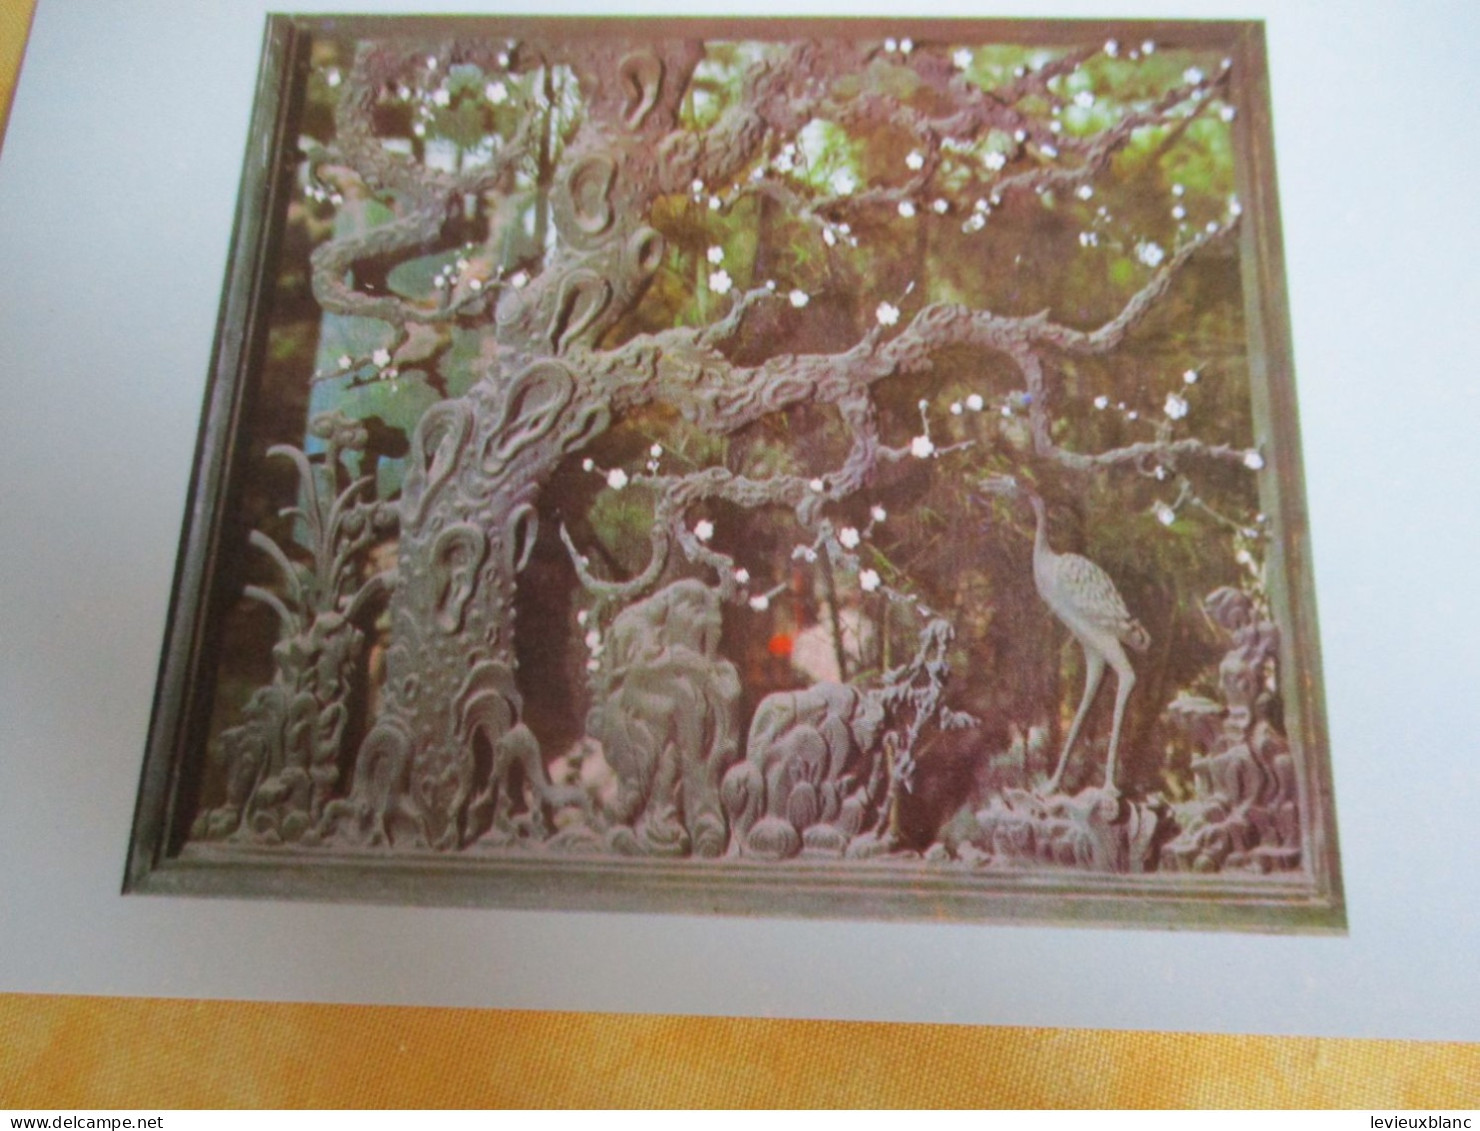 12 cartes postales anciennes/YU Garden / Shangaï / République Populaire de Chine / 1979     JAP54